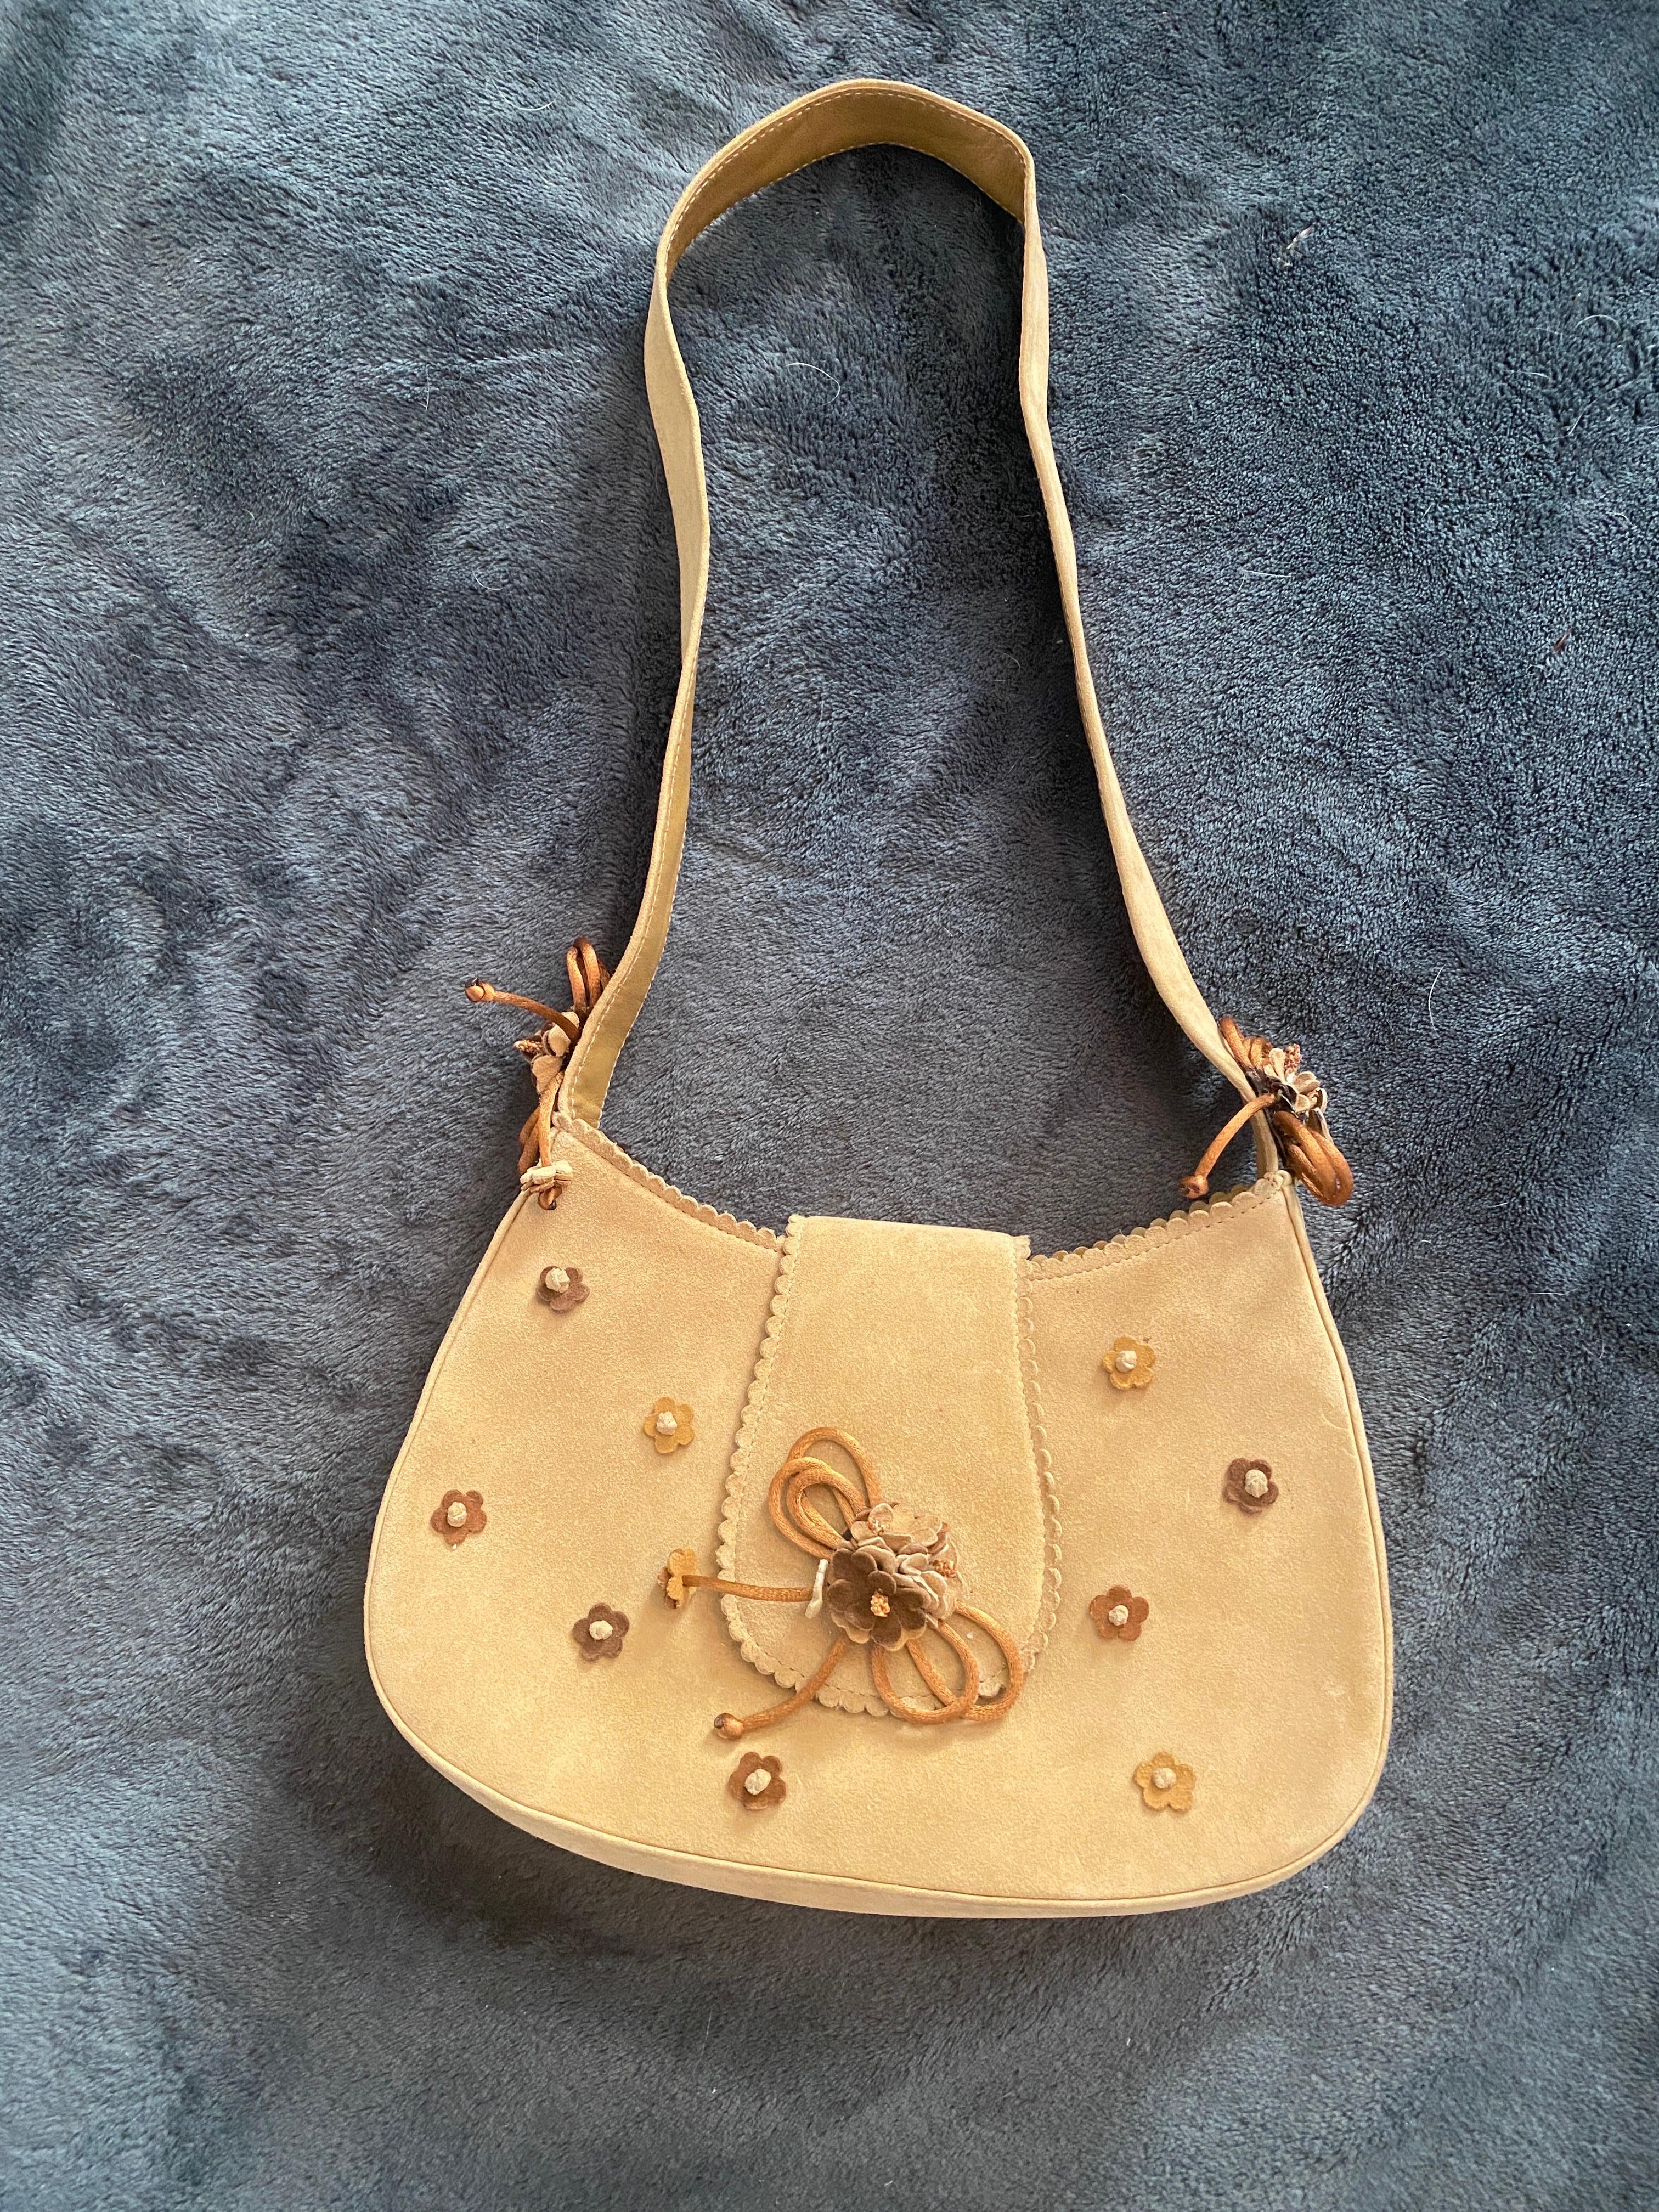 Stuart Weitzman Vintage Brown Suede Handbag with Floral Decoration NWOT For Sale 1